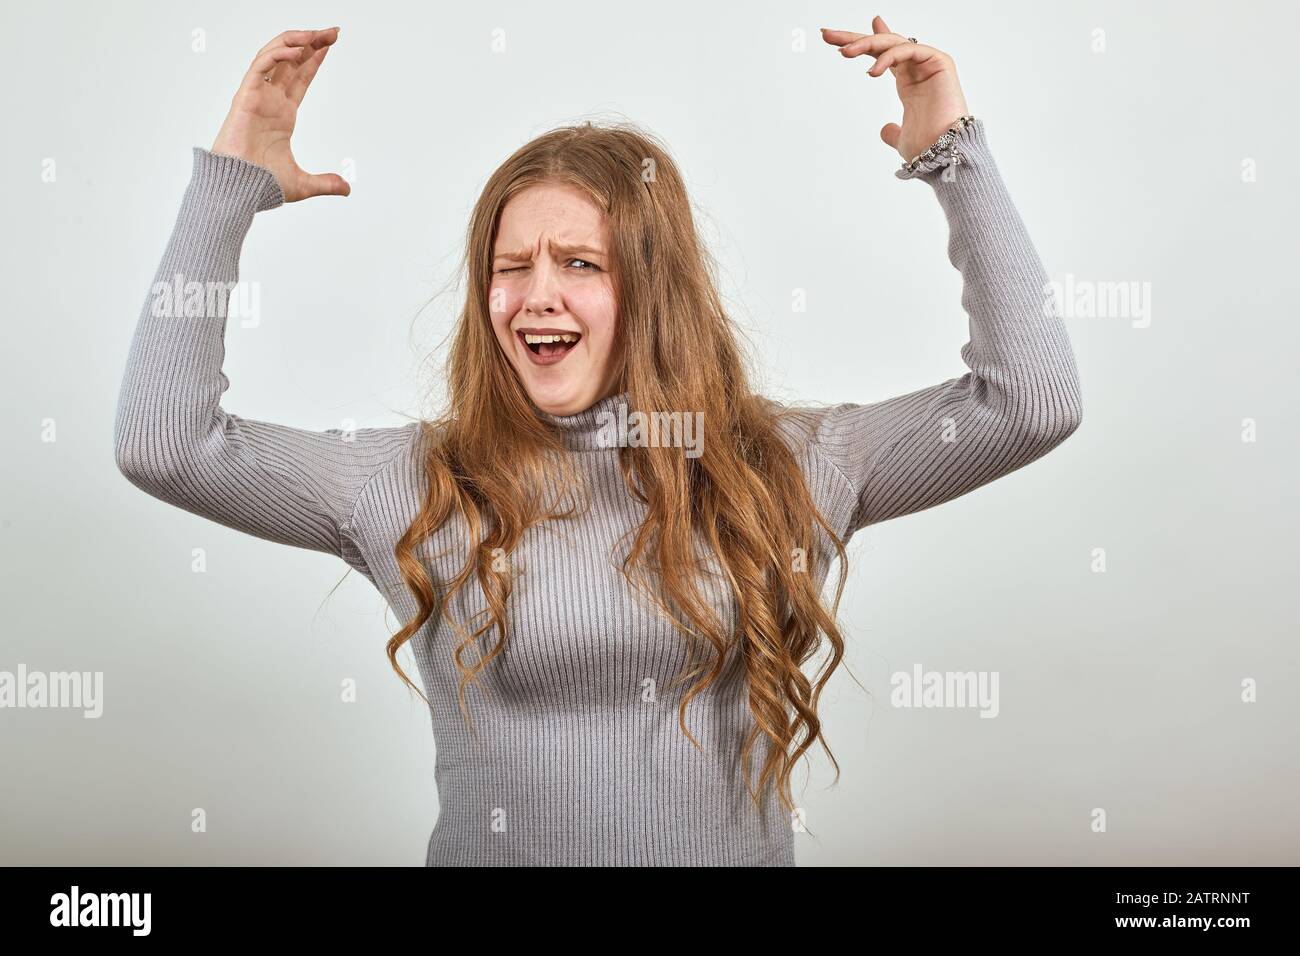 une femme en pull gris soulève joyeusement ses mains cries avec plaisir Banque D'Images